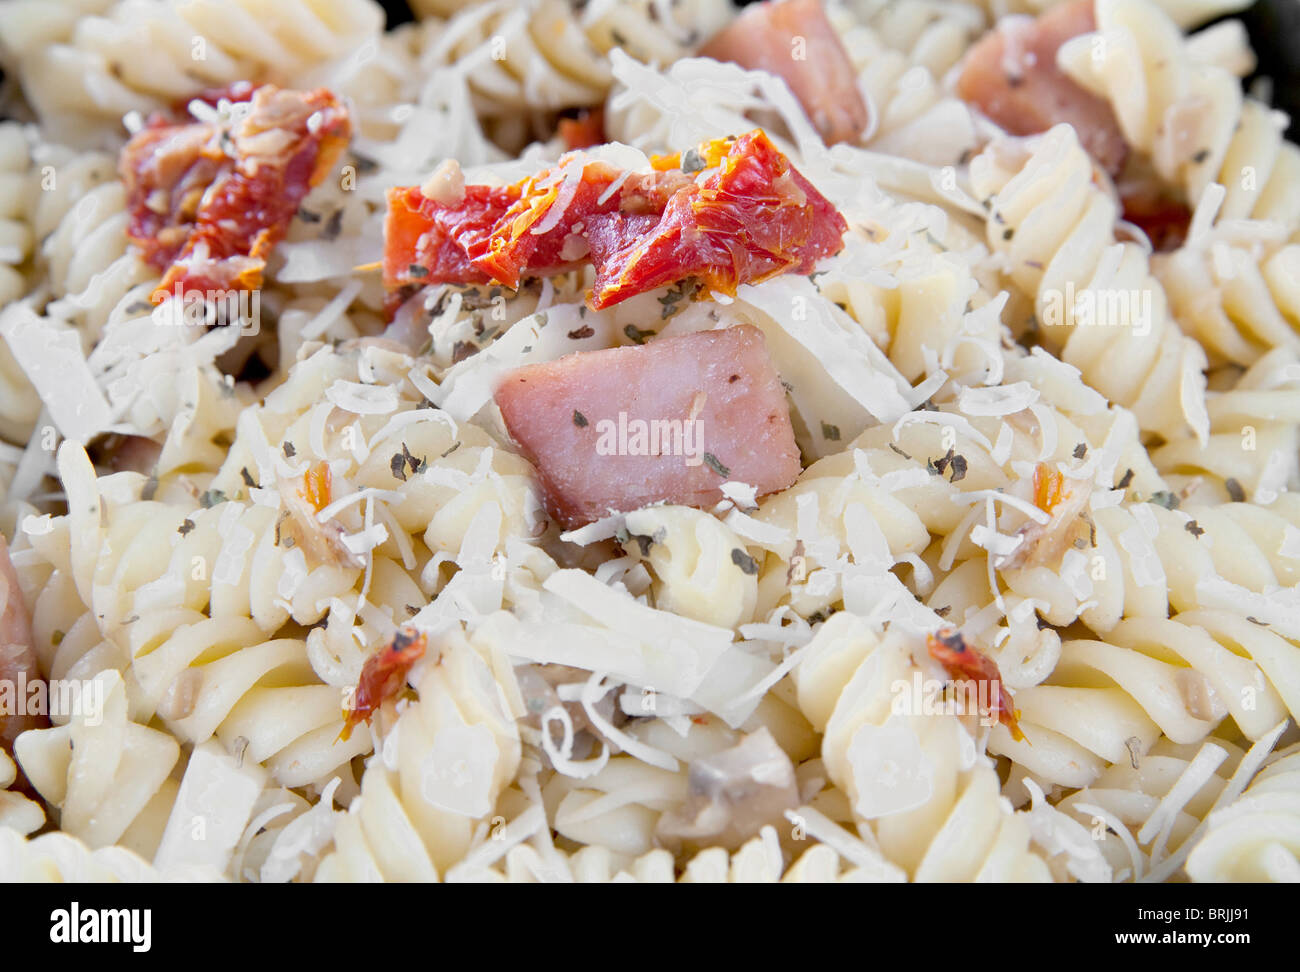 Bacon et pâtes aux tomates séchées aux champignons et parmesan dans un bol noir Banque D'Images